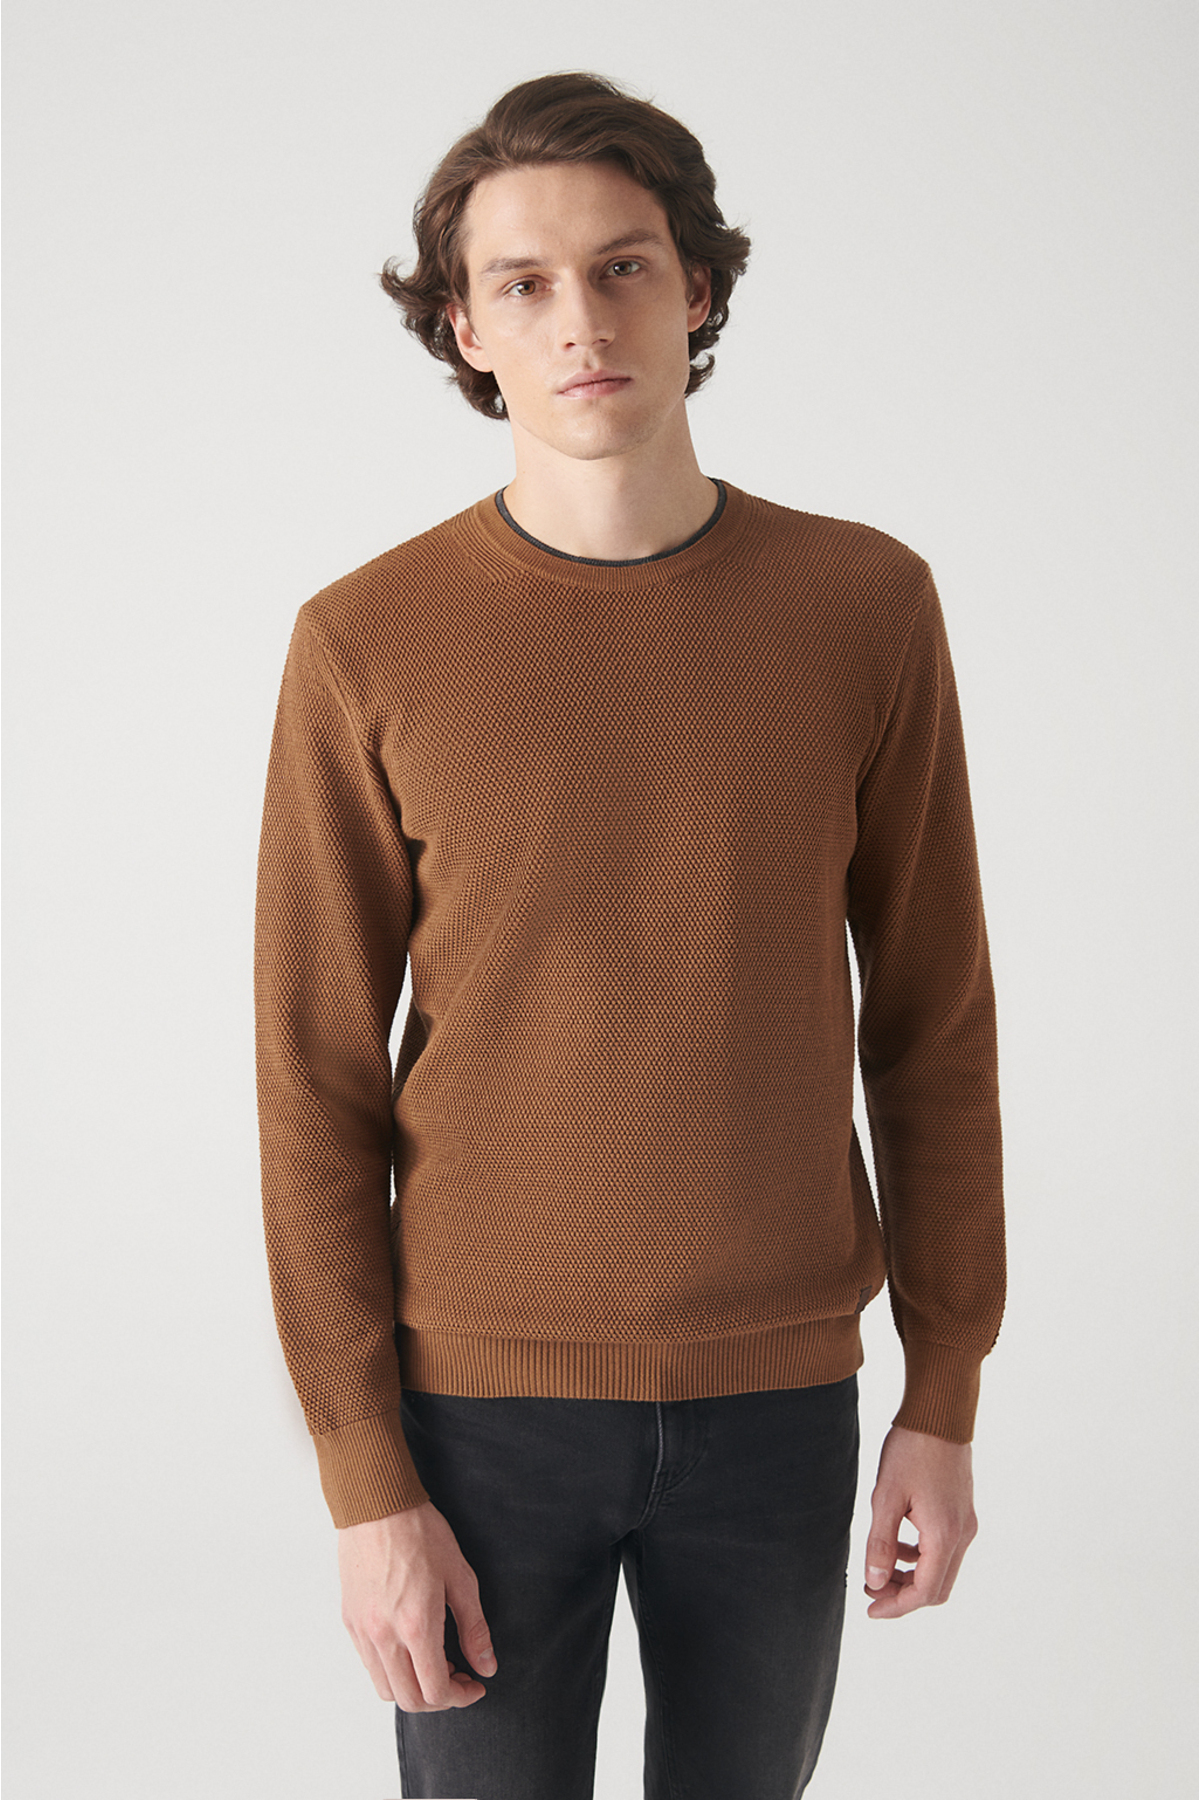 Avva Men's Camel Double Collar Detailed Textured Cotton Standard Fit Regular Cut Knitwear Sweater